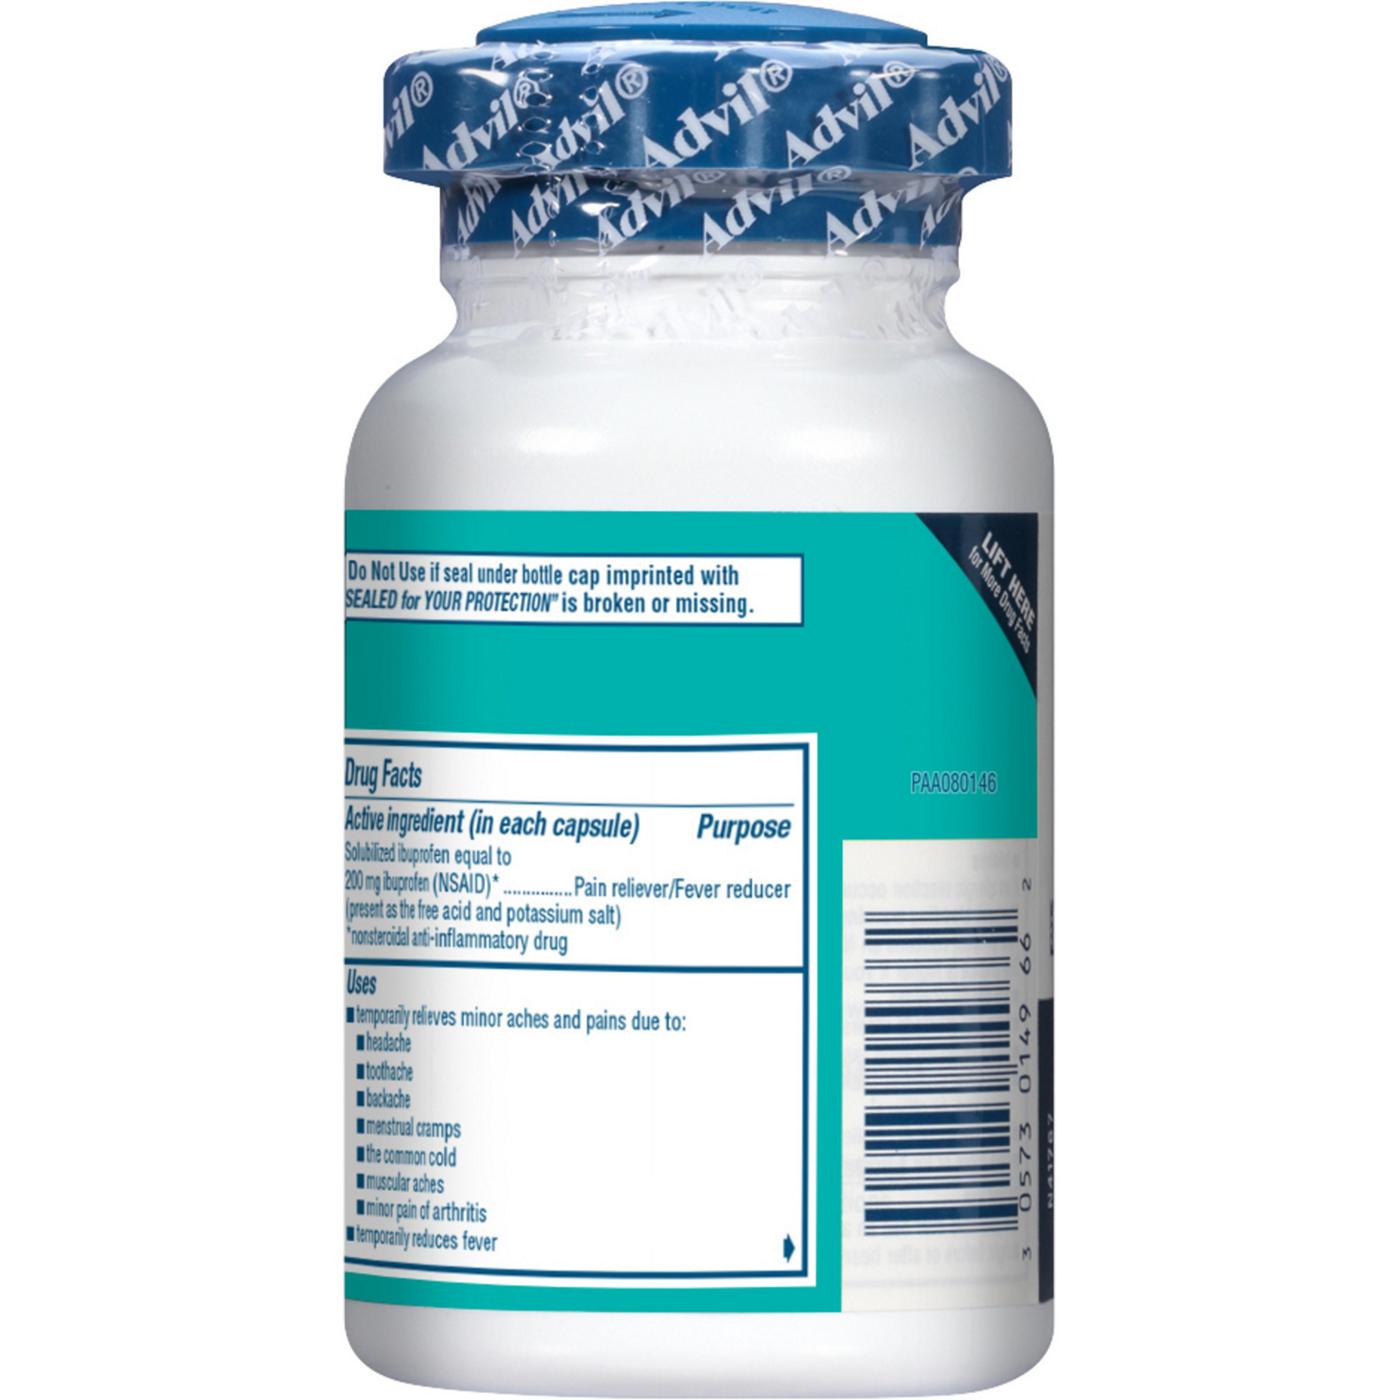 Advil Liqui-Gels Temporary Pain Relief Ibuprofen Liquid Filled Capsules; image 6 of 7